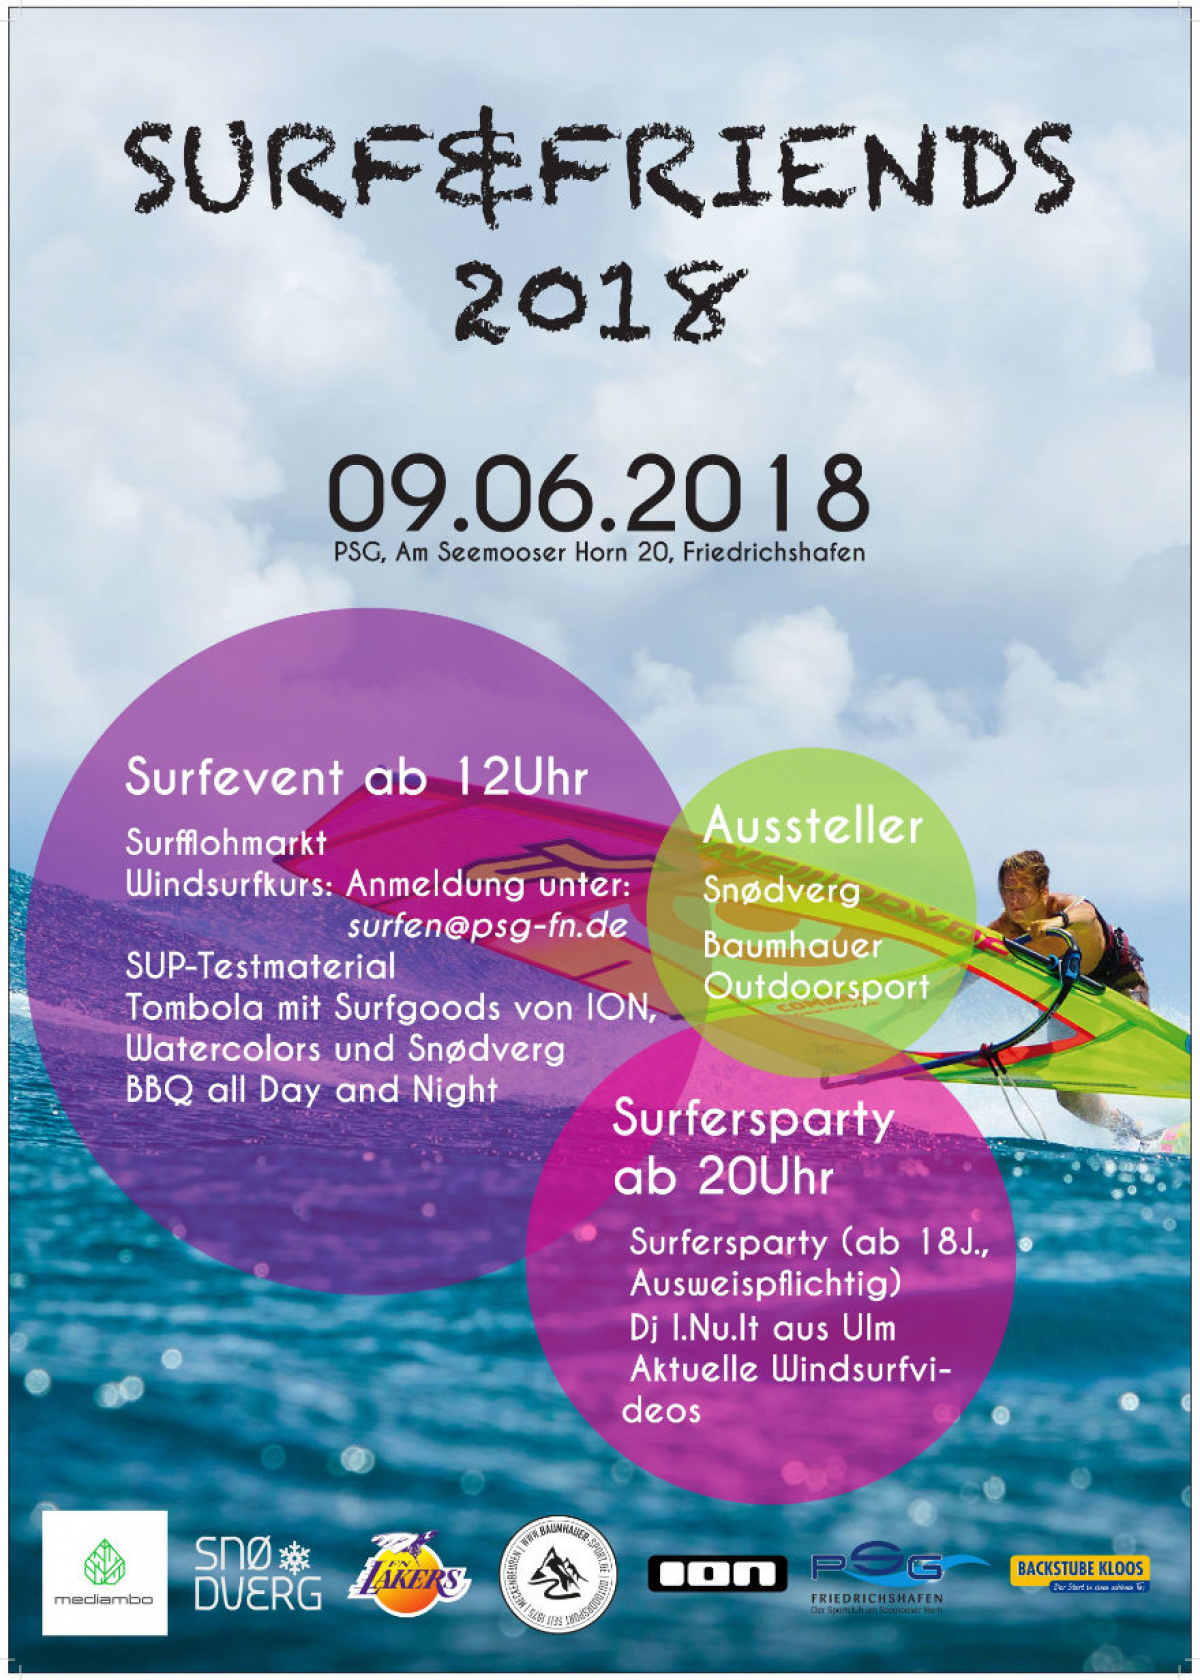 Surf & Friends 2018 - Friedrichshafen